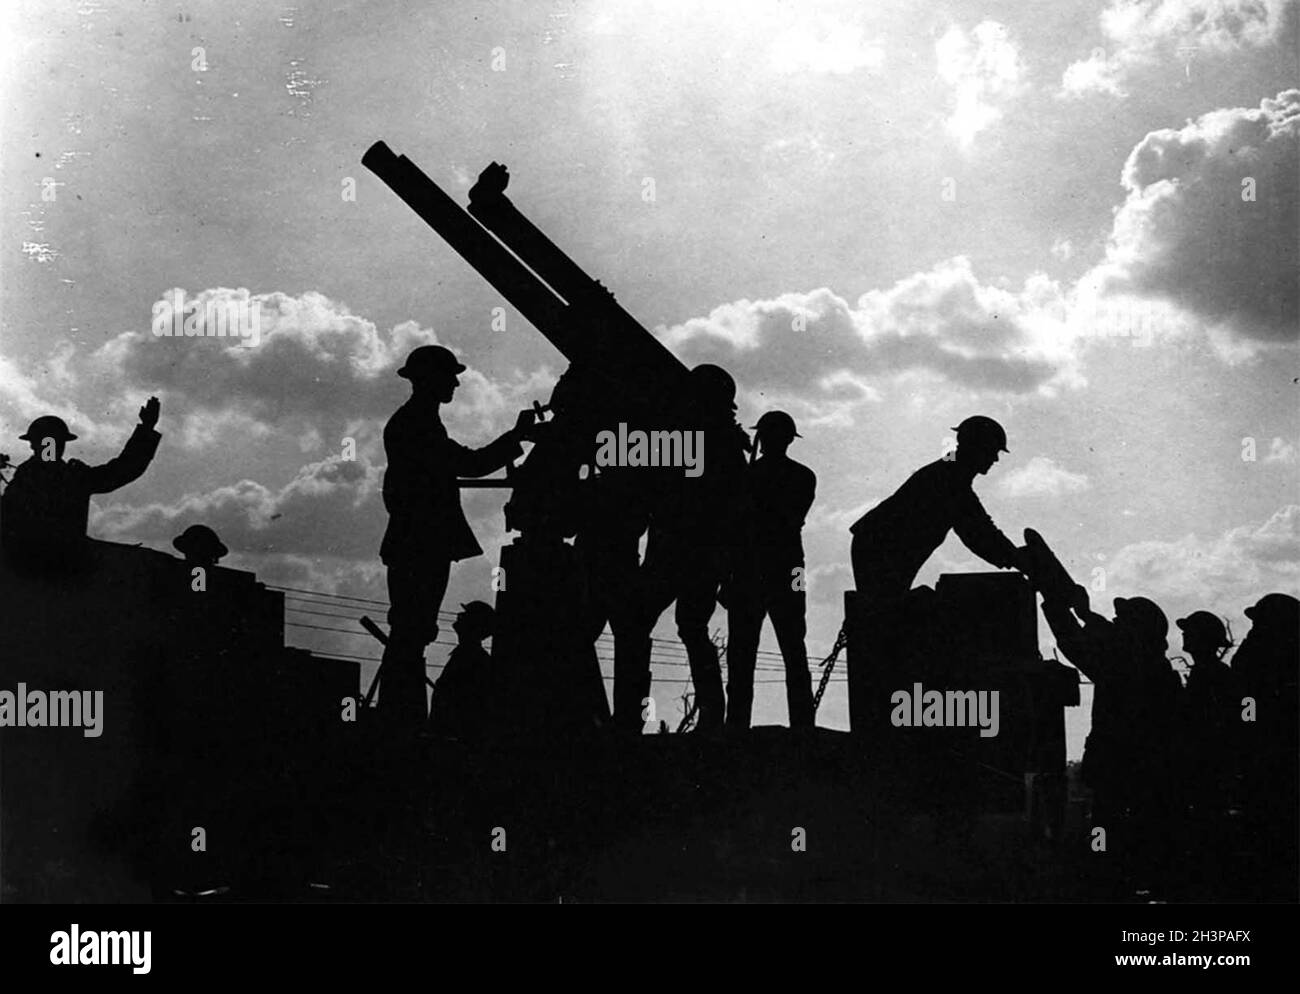 Les soldats silhouetés contre le ciel se préparent à tirer un fusil anti-avion pendant la bataille de Broodseinde pendant la campagne de Passchendaele. Banque D'Images